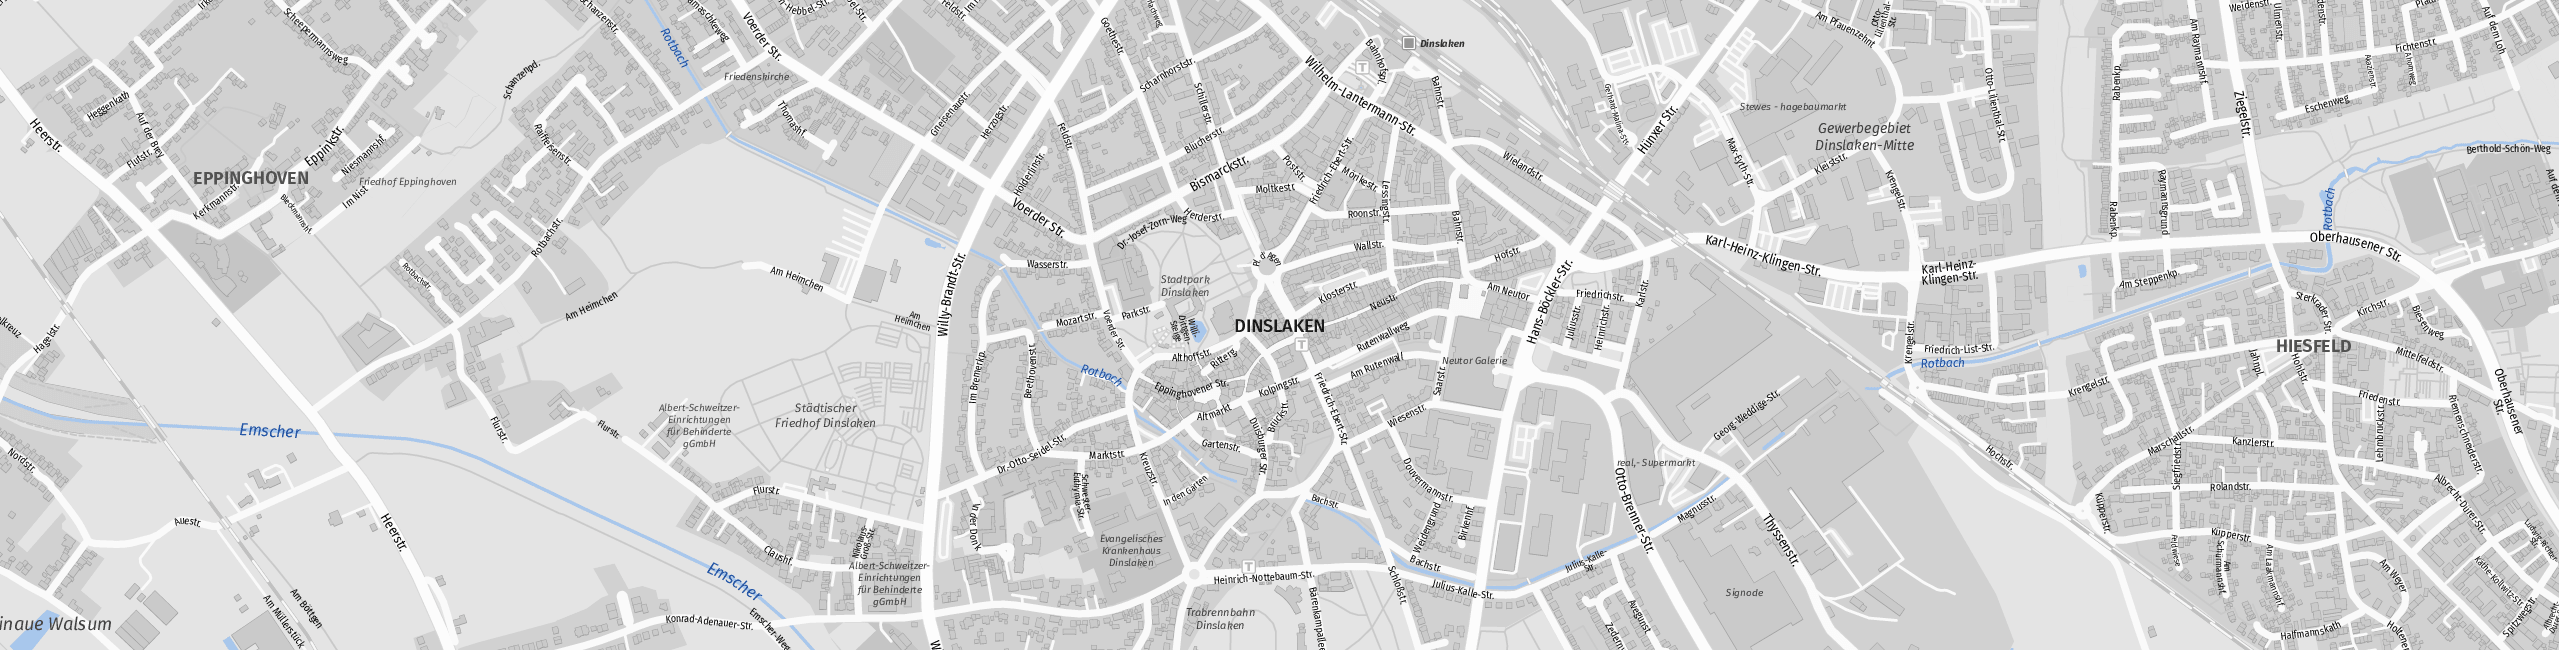 Stadtplan Dinslaken zum Downloaden.